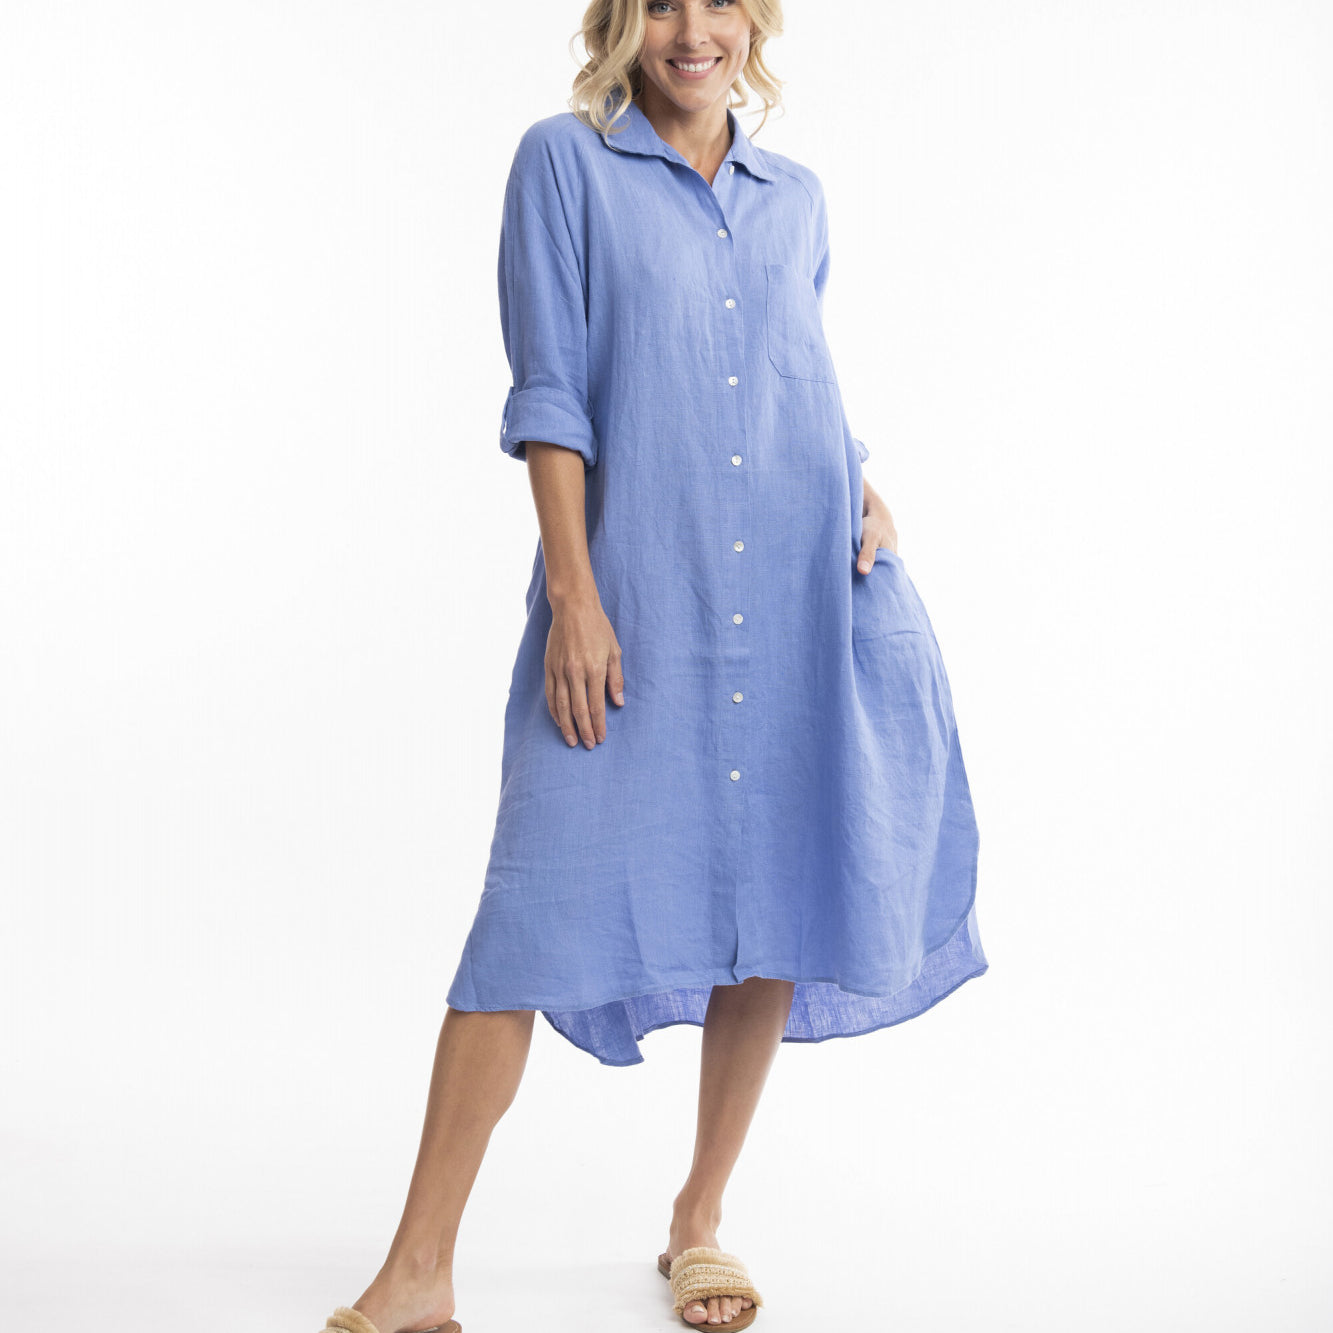 Orientique Australia 71456 Linen Shirt Dress